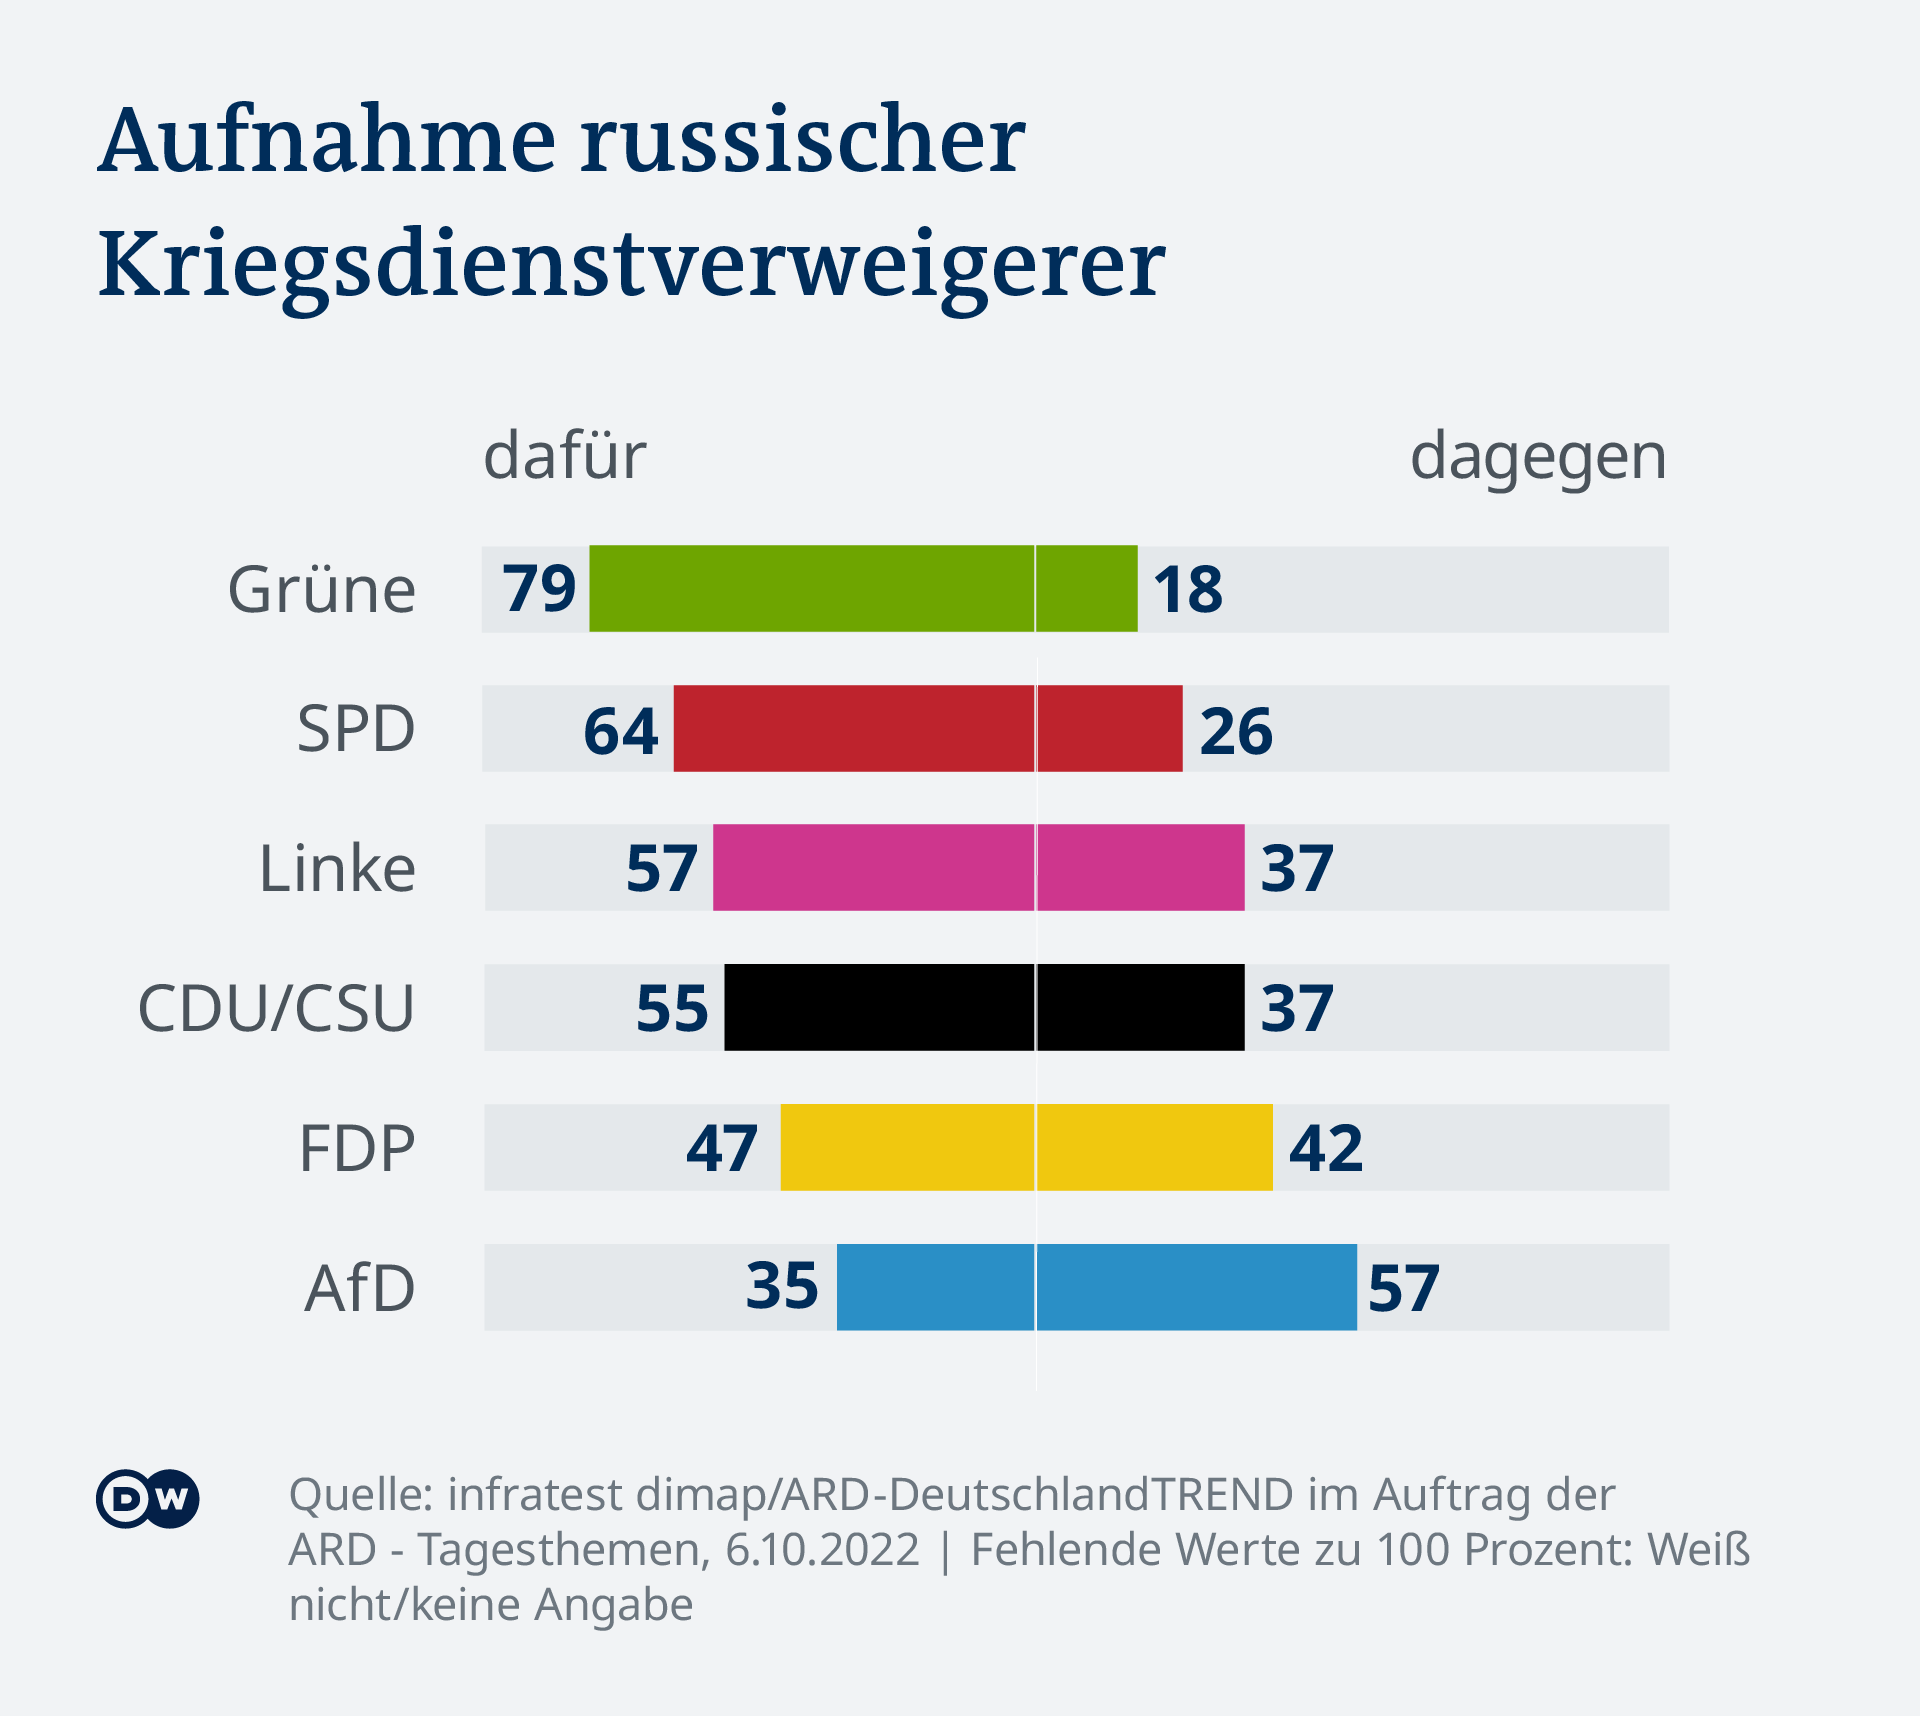 Die Grafik zeigt, wie die jeweiligen Parteianhänger die Frage beantwortet haben. Angaben in Prozentpunkten dafür / dagegen: Grüne 79/18, SPD 64/26, Linke 57/37, CDU/CSU 55/37, FDP 47/42, AfD 35/57